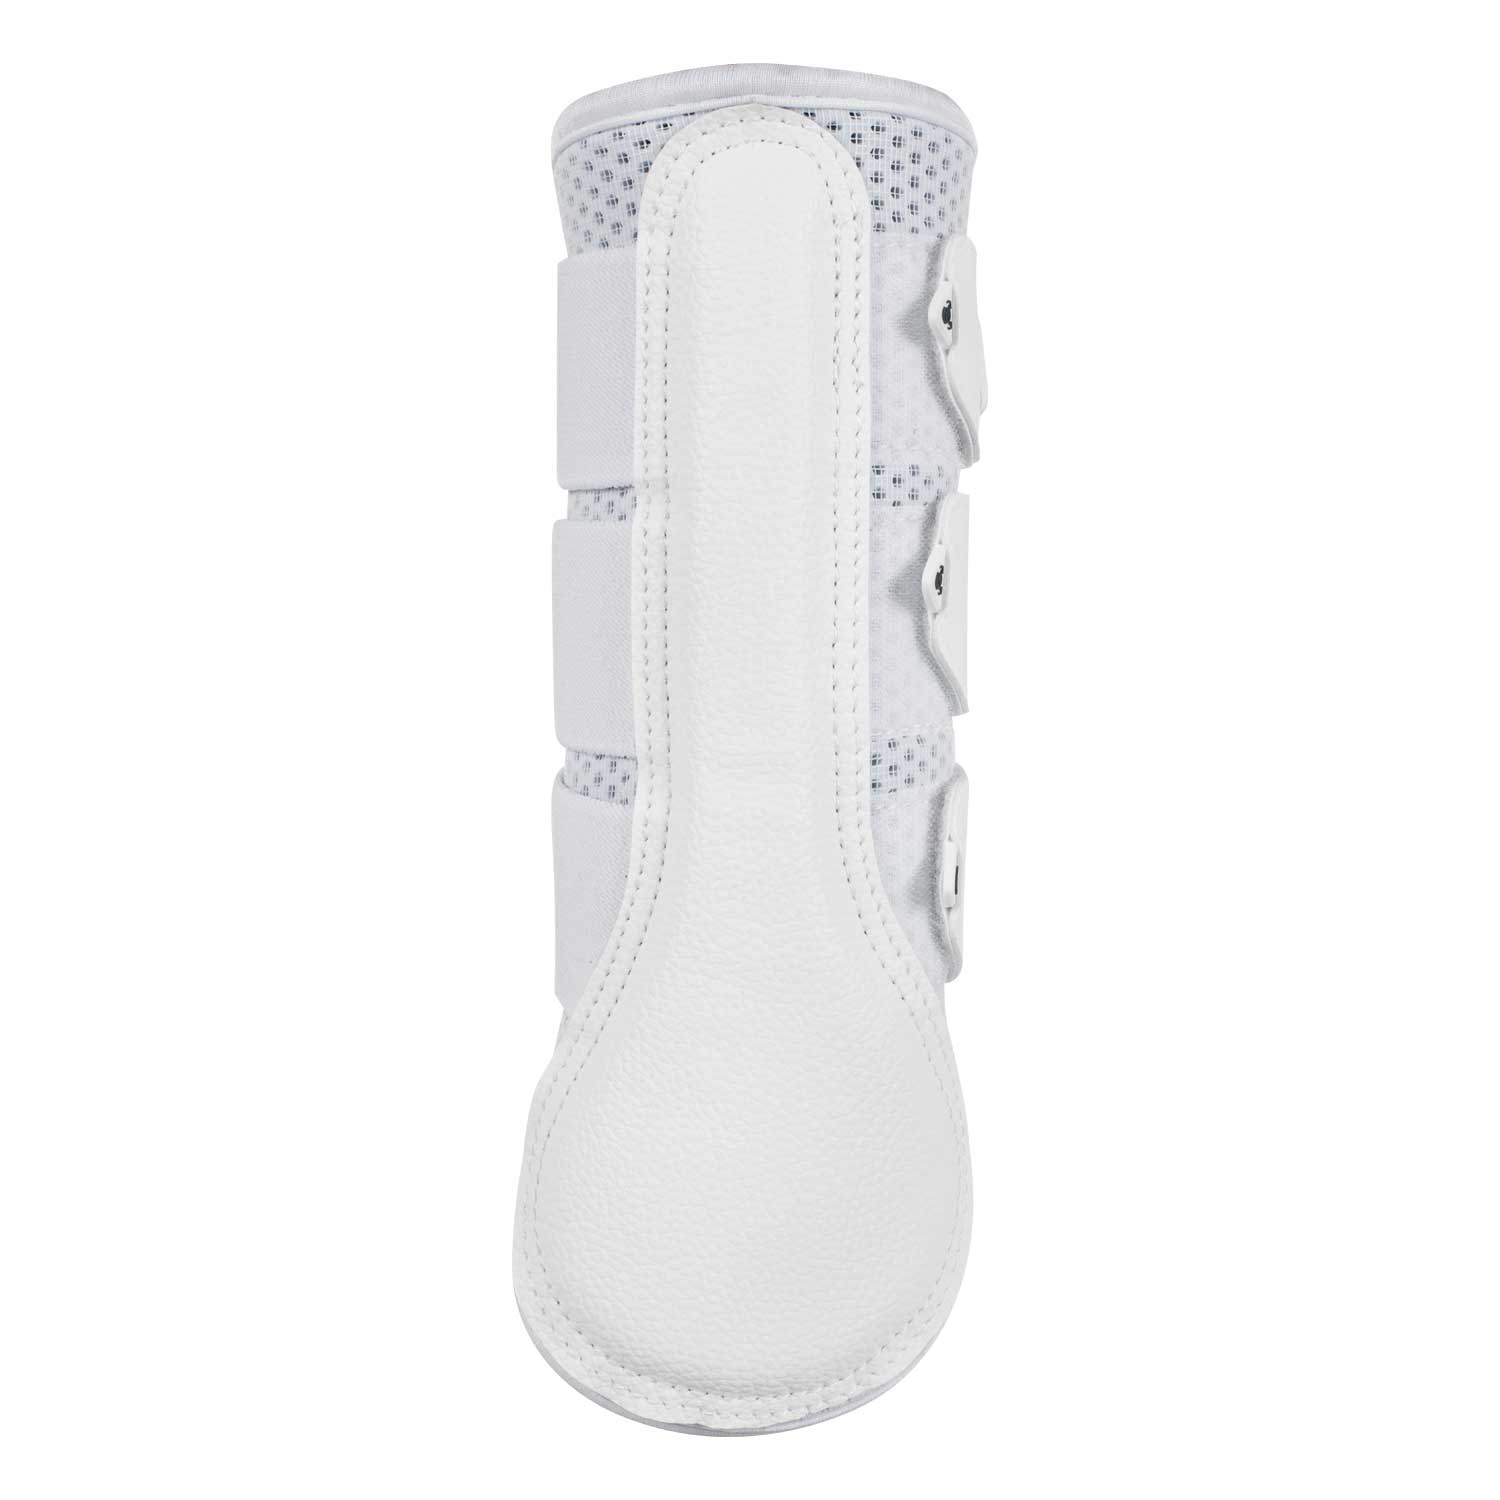 Gamaschen Perforated neoprene rear boots triple Velcro fastening - Reitstiefel Kandel - Dein Reitshop